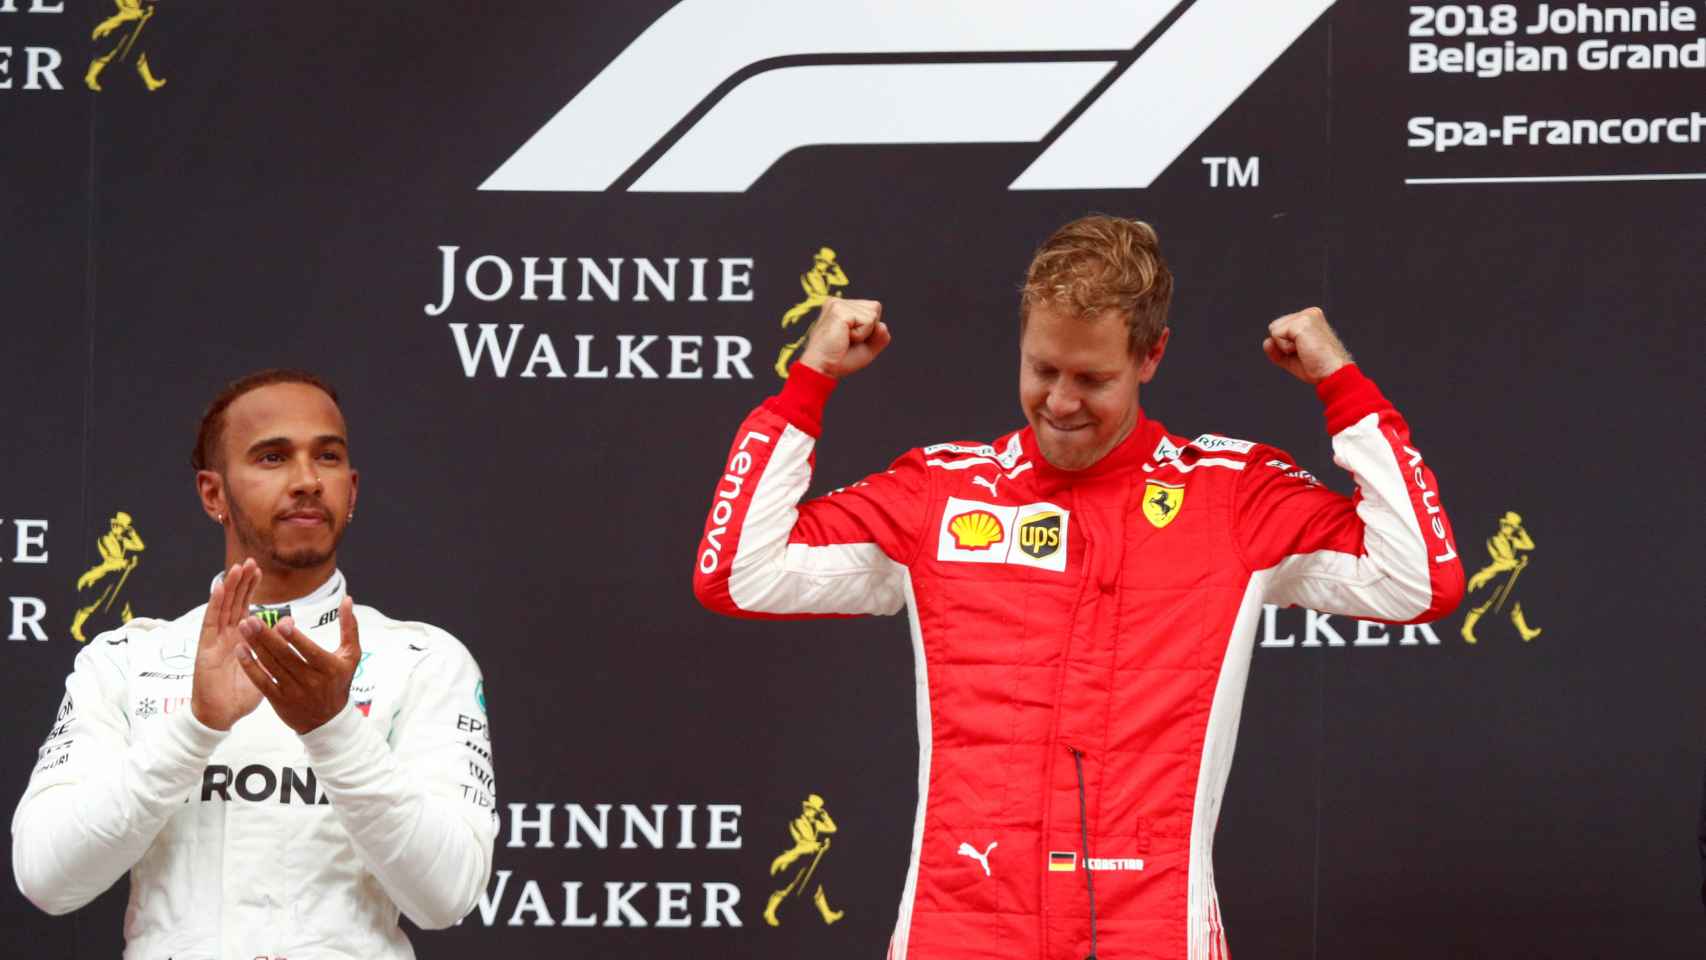 Hamilton aplaude a Vettel mientras celebra su victoria en Spa